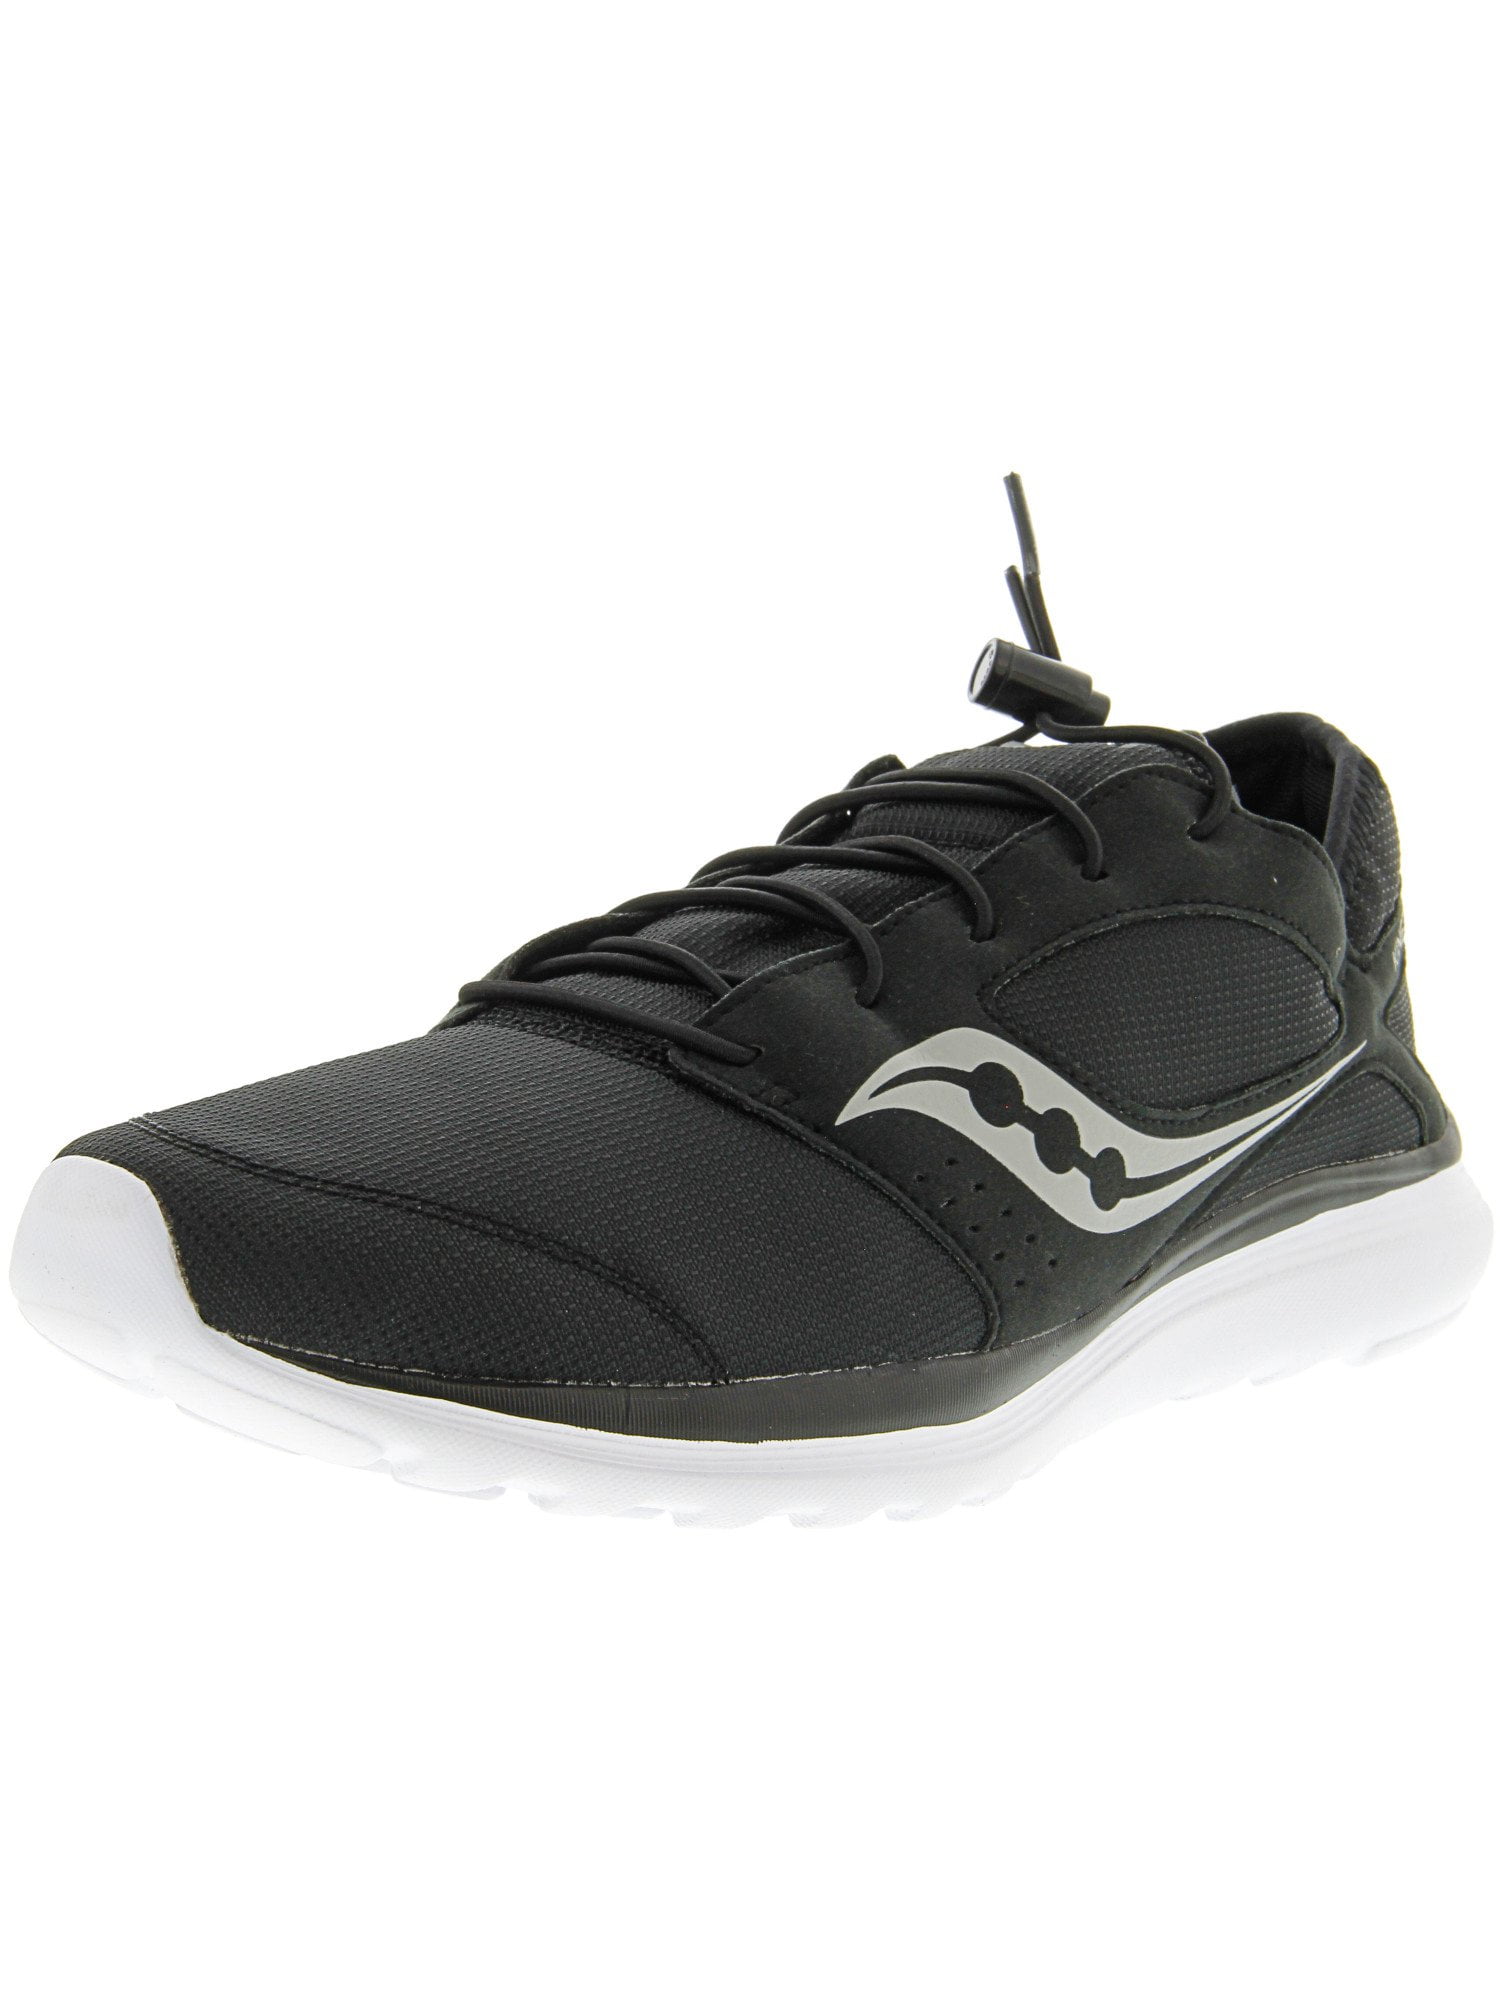 Saucony Men's Kineta Relay Black Ankle-High Running Shoe - 10.5M ...